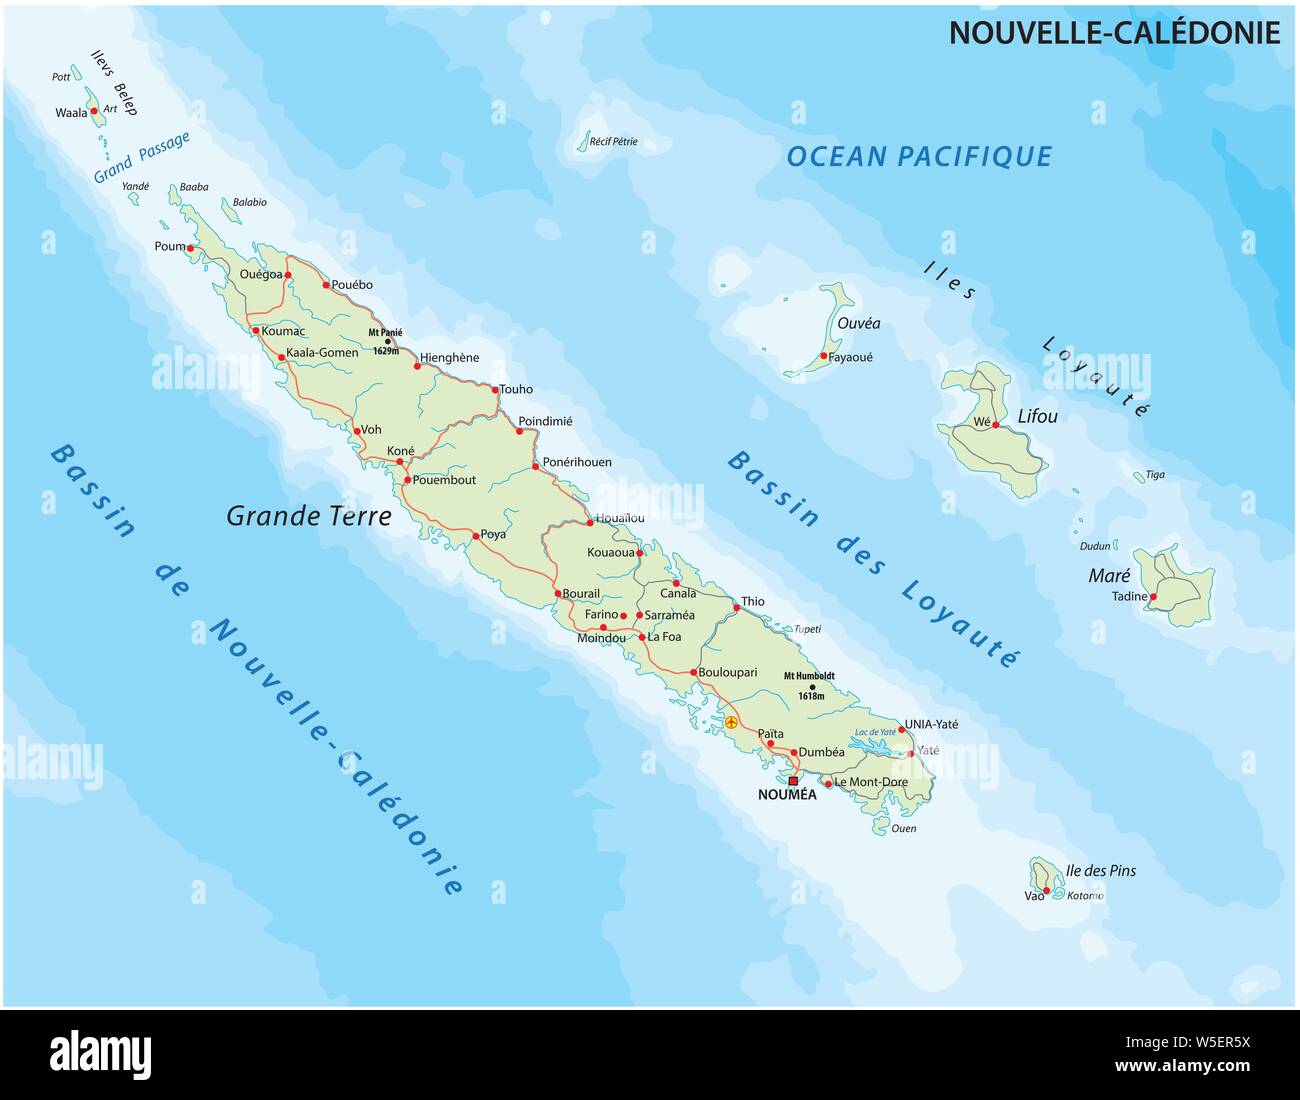 Landkarte Neukaledonien französische Inselgruppe im Südpazifik Stock Vektor